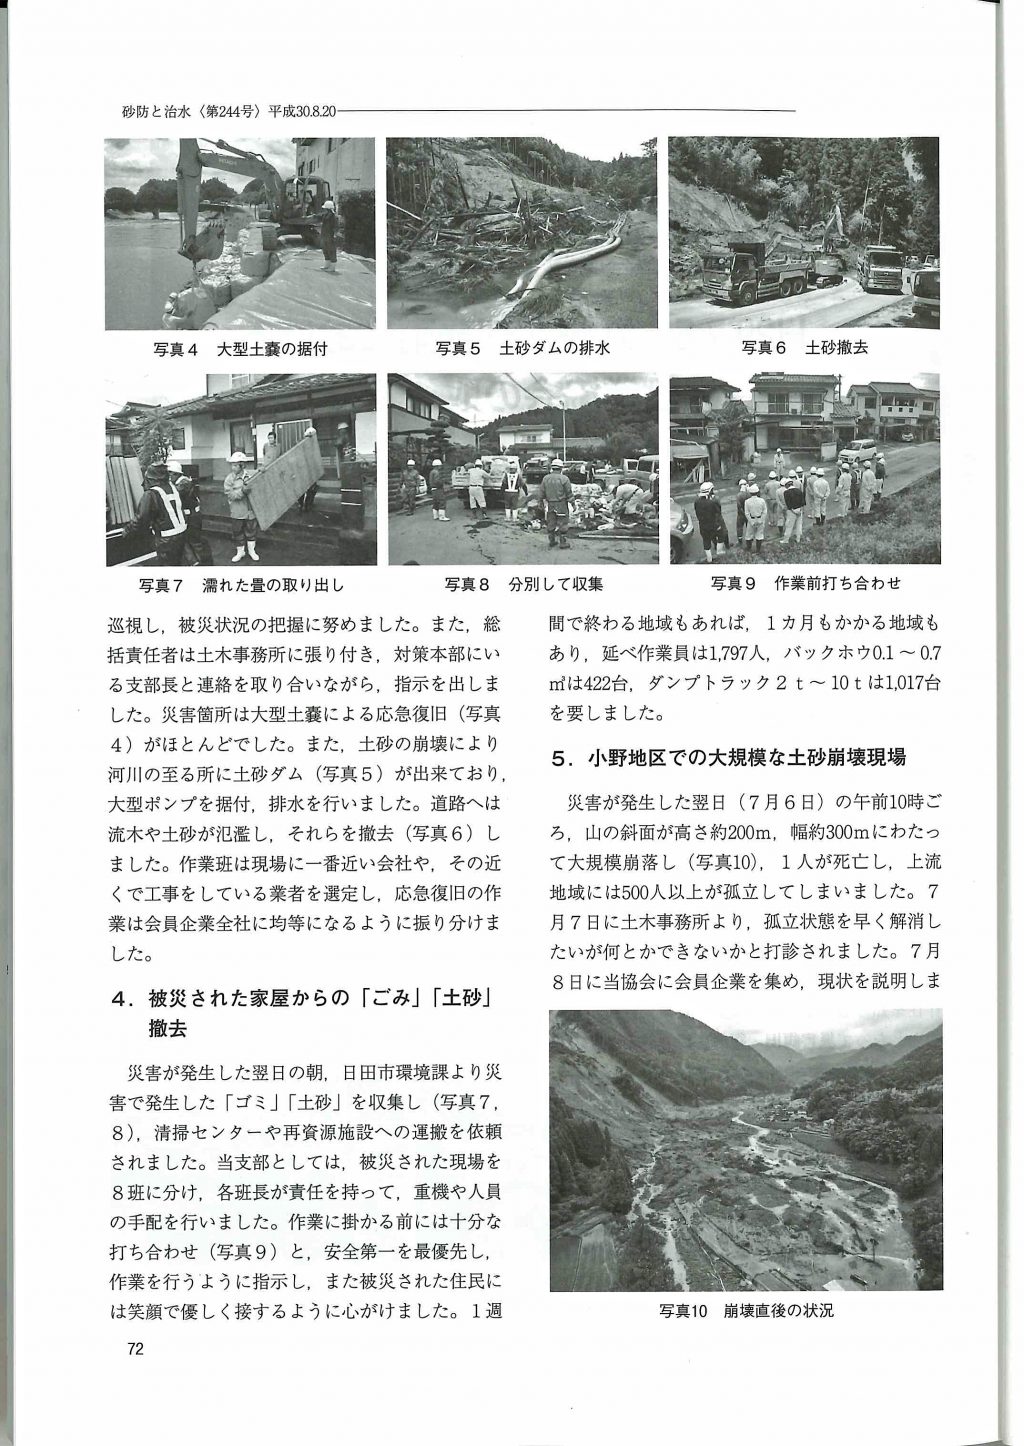 『九州北部豪雨における建設業協会の取り組み』の記事掲載